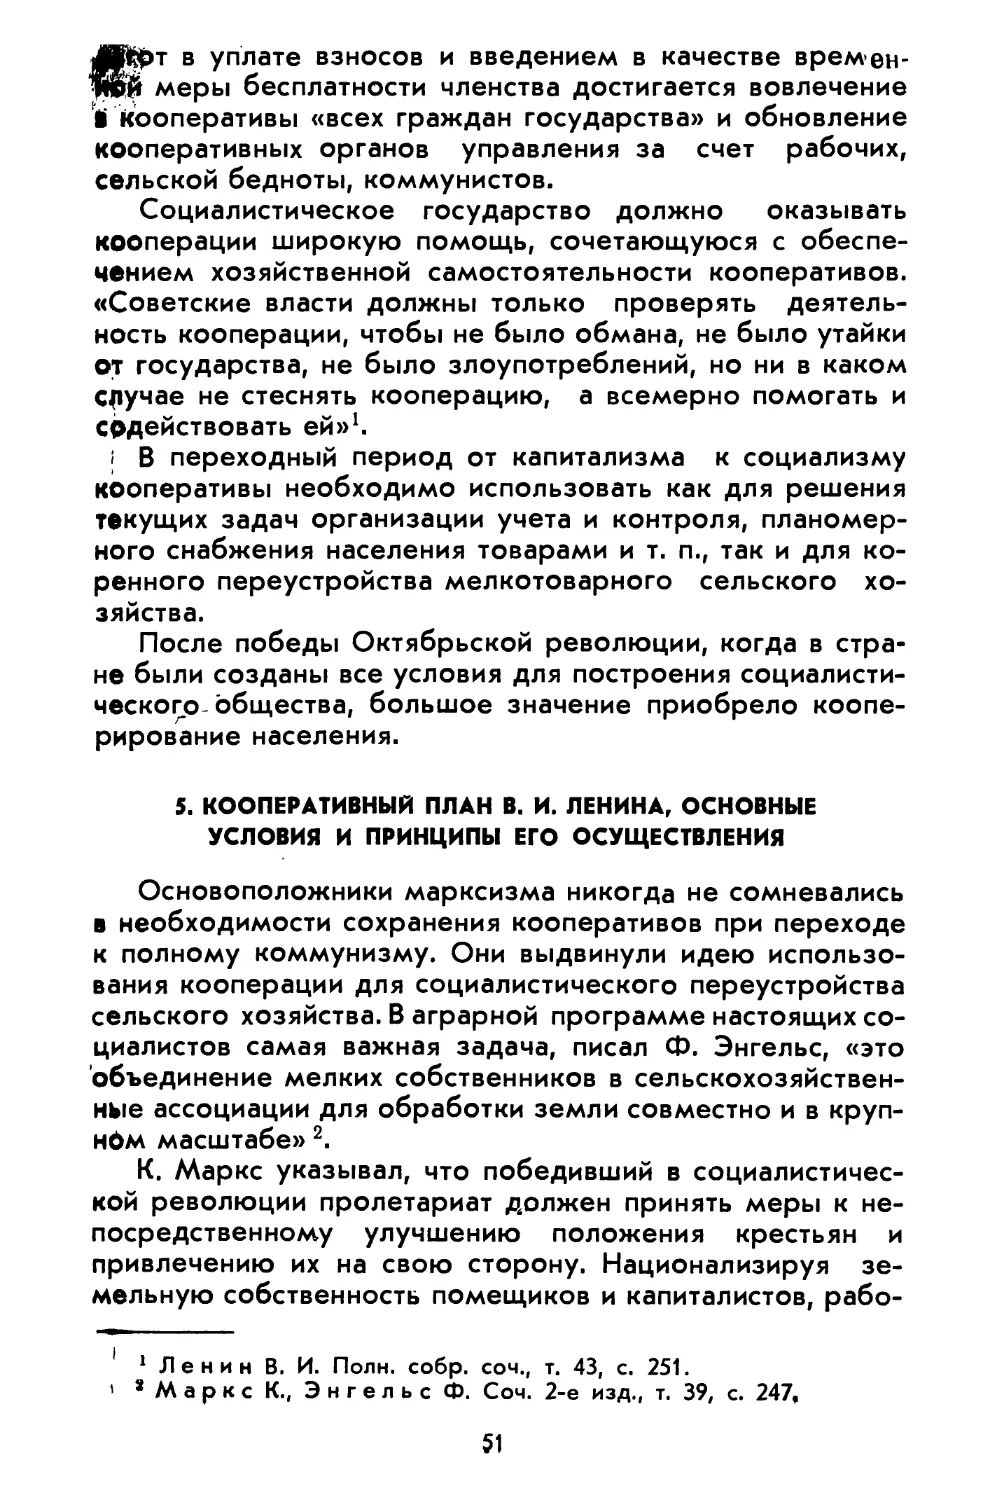 5. Кооперативный план В. И. Ленина, основные условия и принципы его осуществления